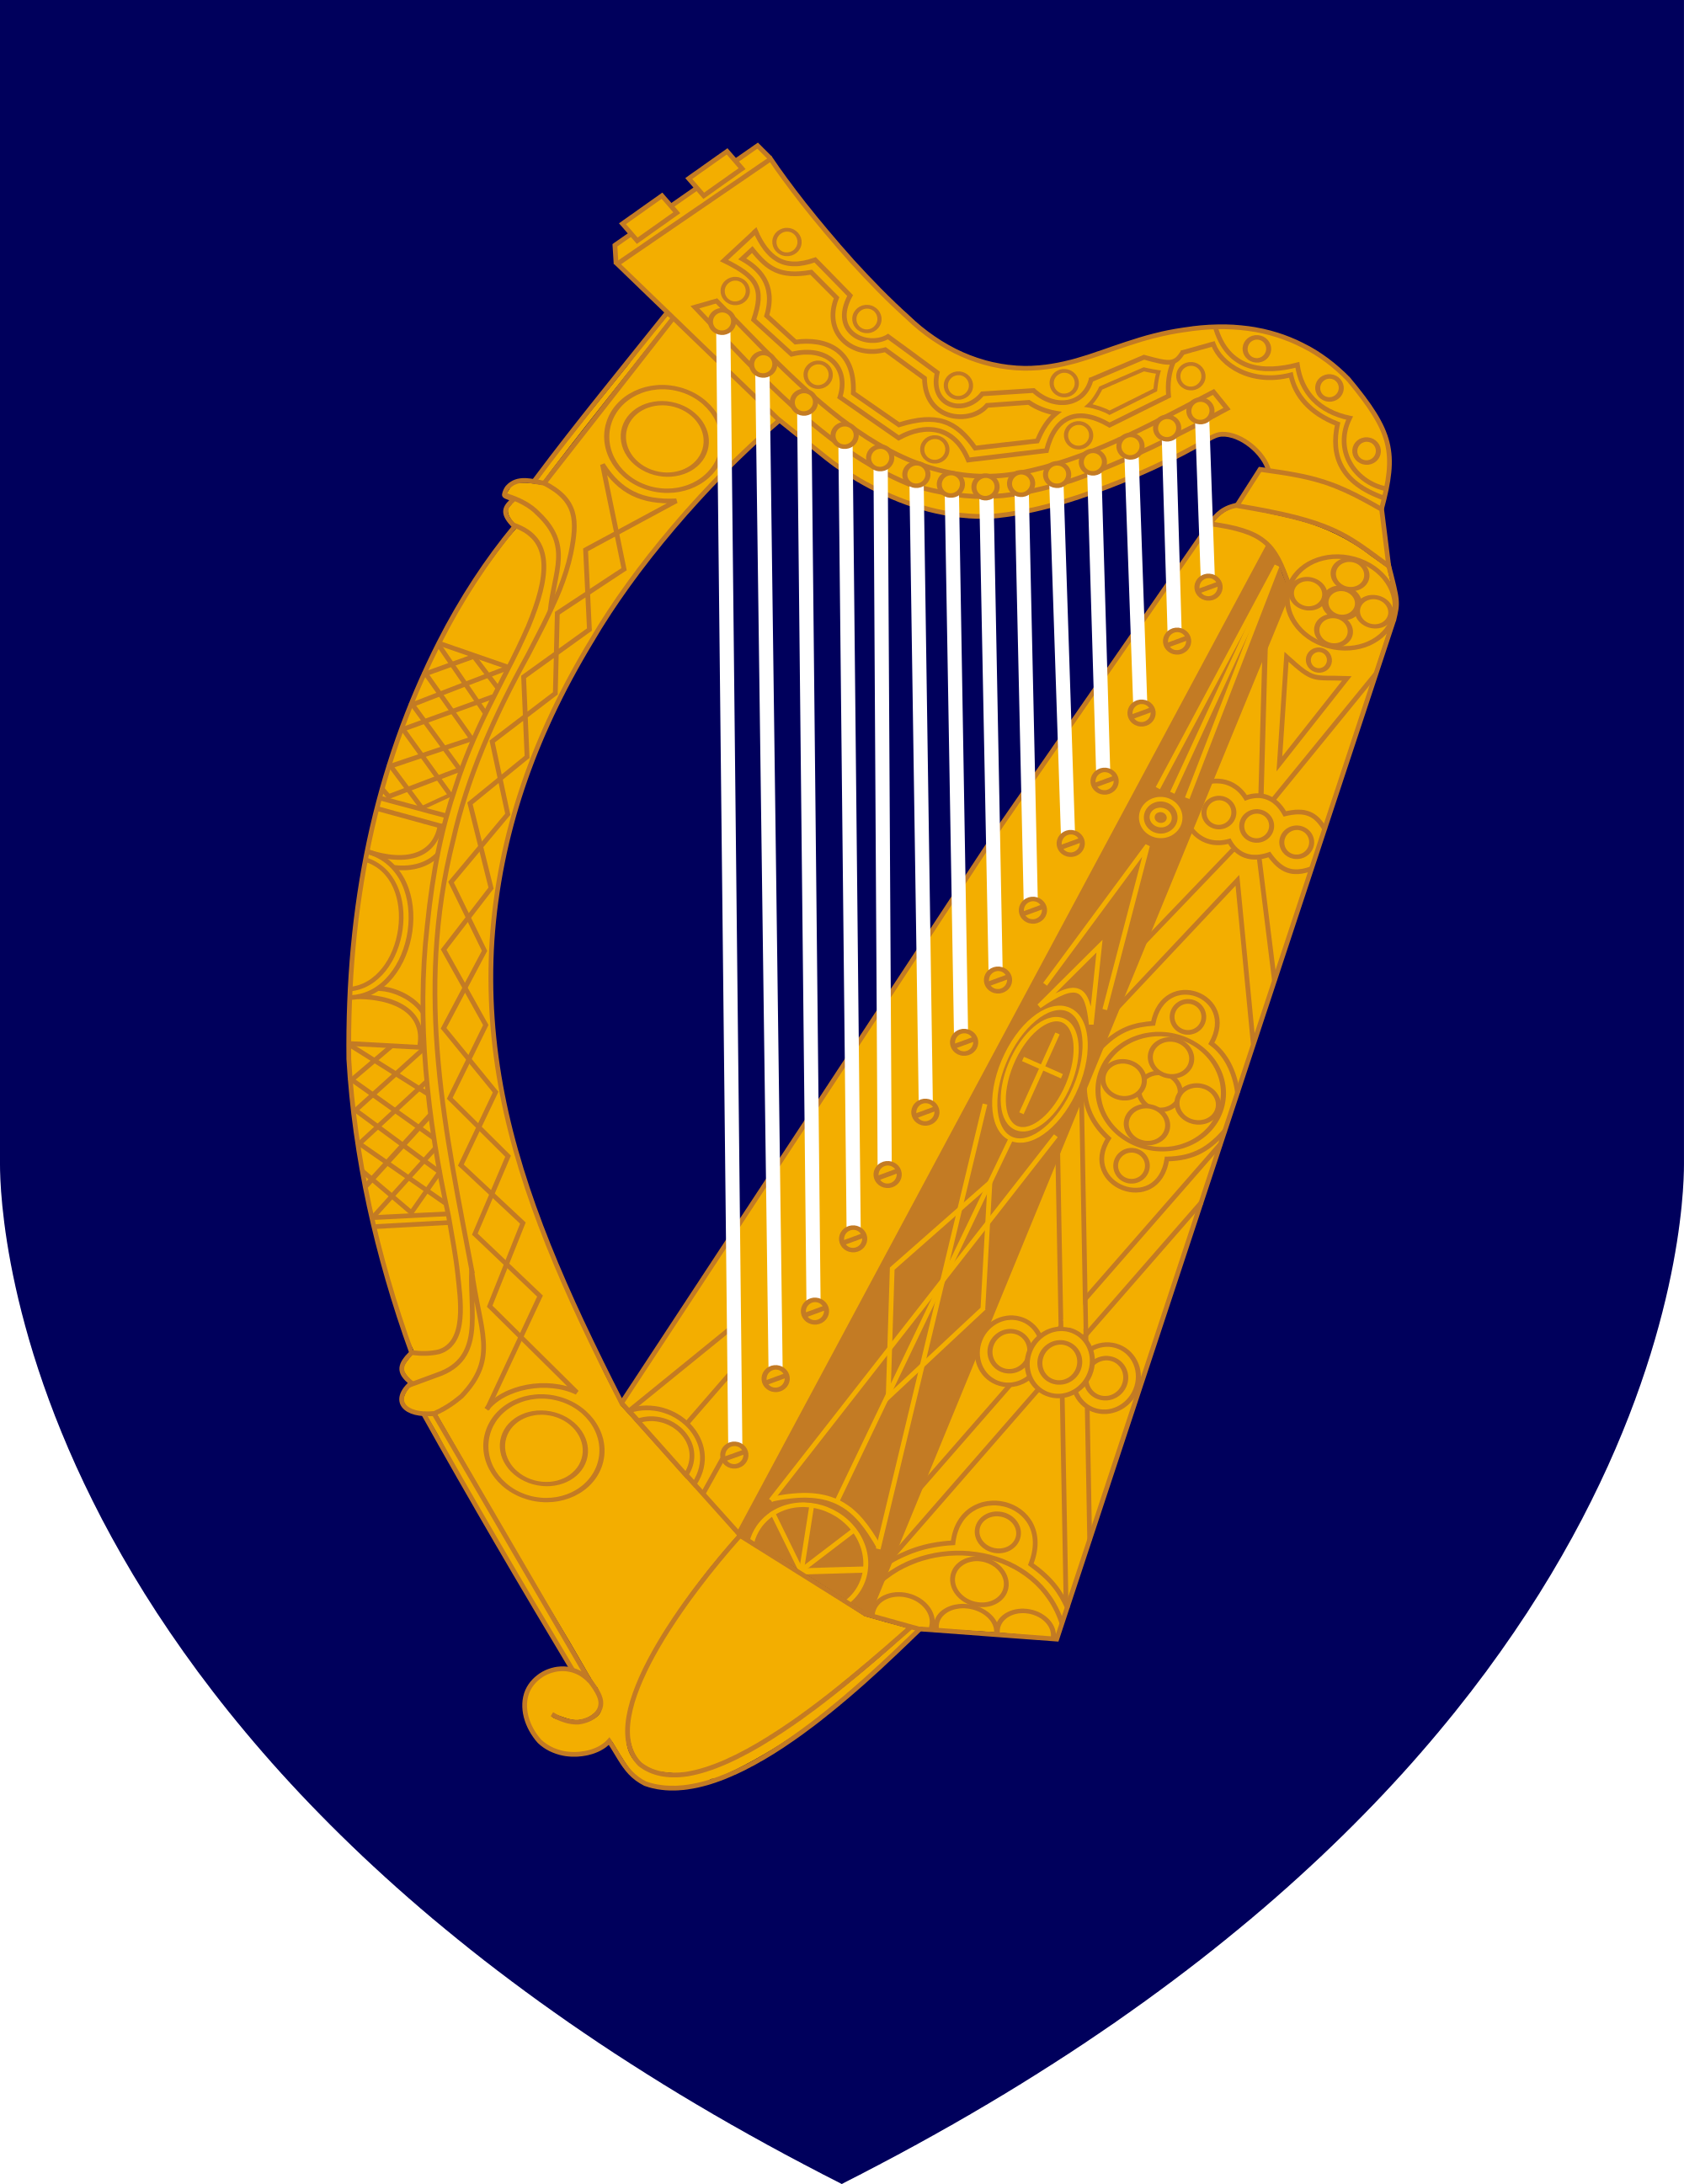 Coat of arms ireland. Hands clipart harp